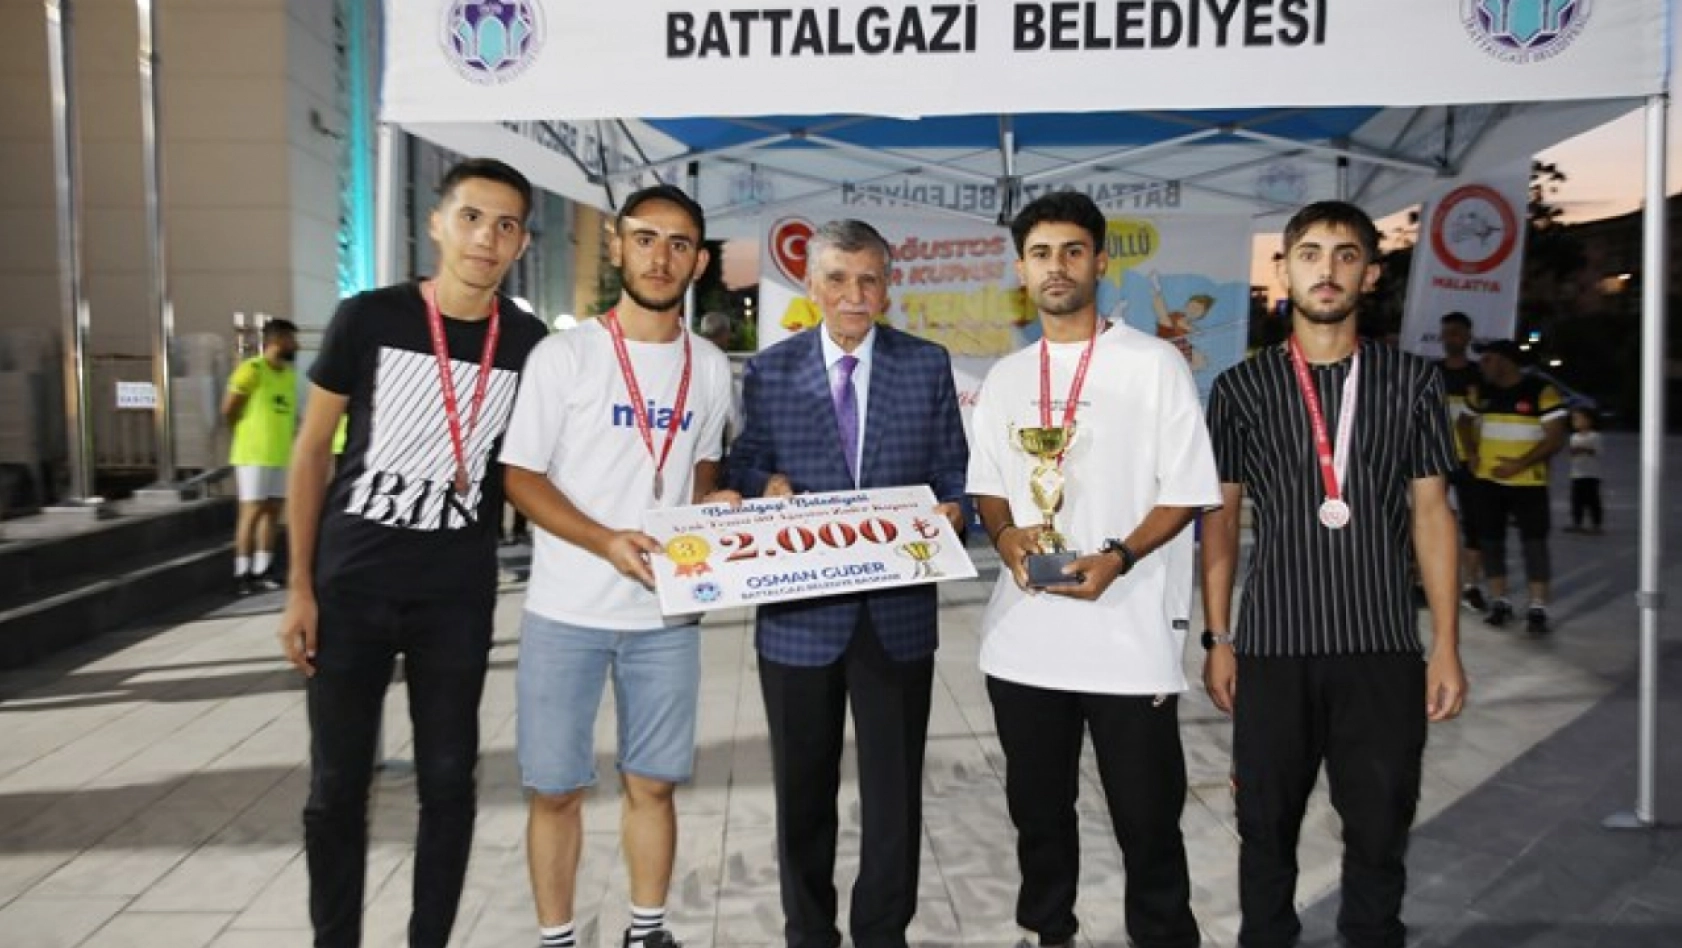 Battalgazi Belediyesi'nce Düzenlenen Ayak Tenisi Turnuvası'nın Finali Yapıldı